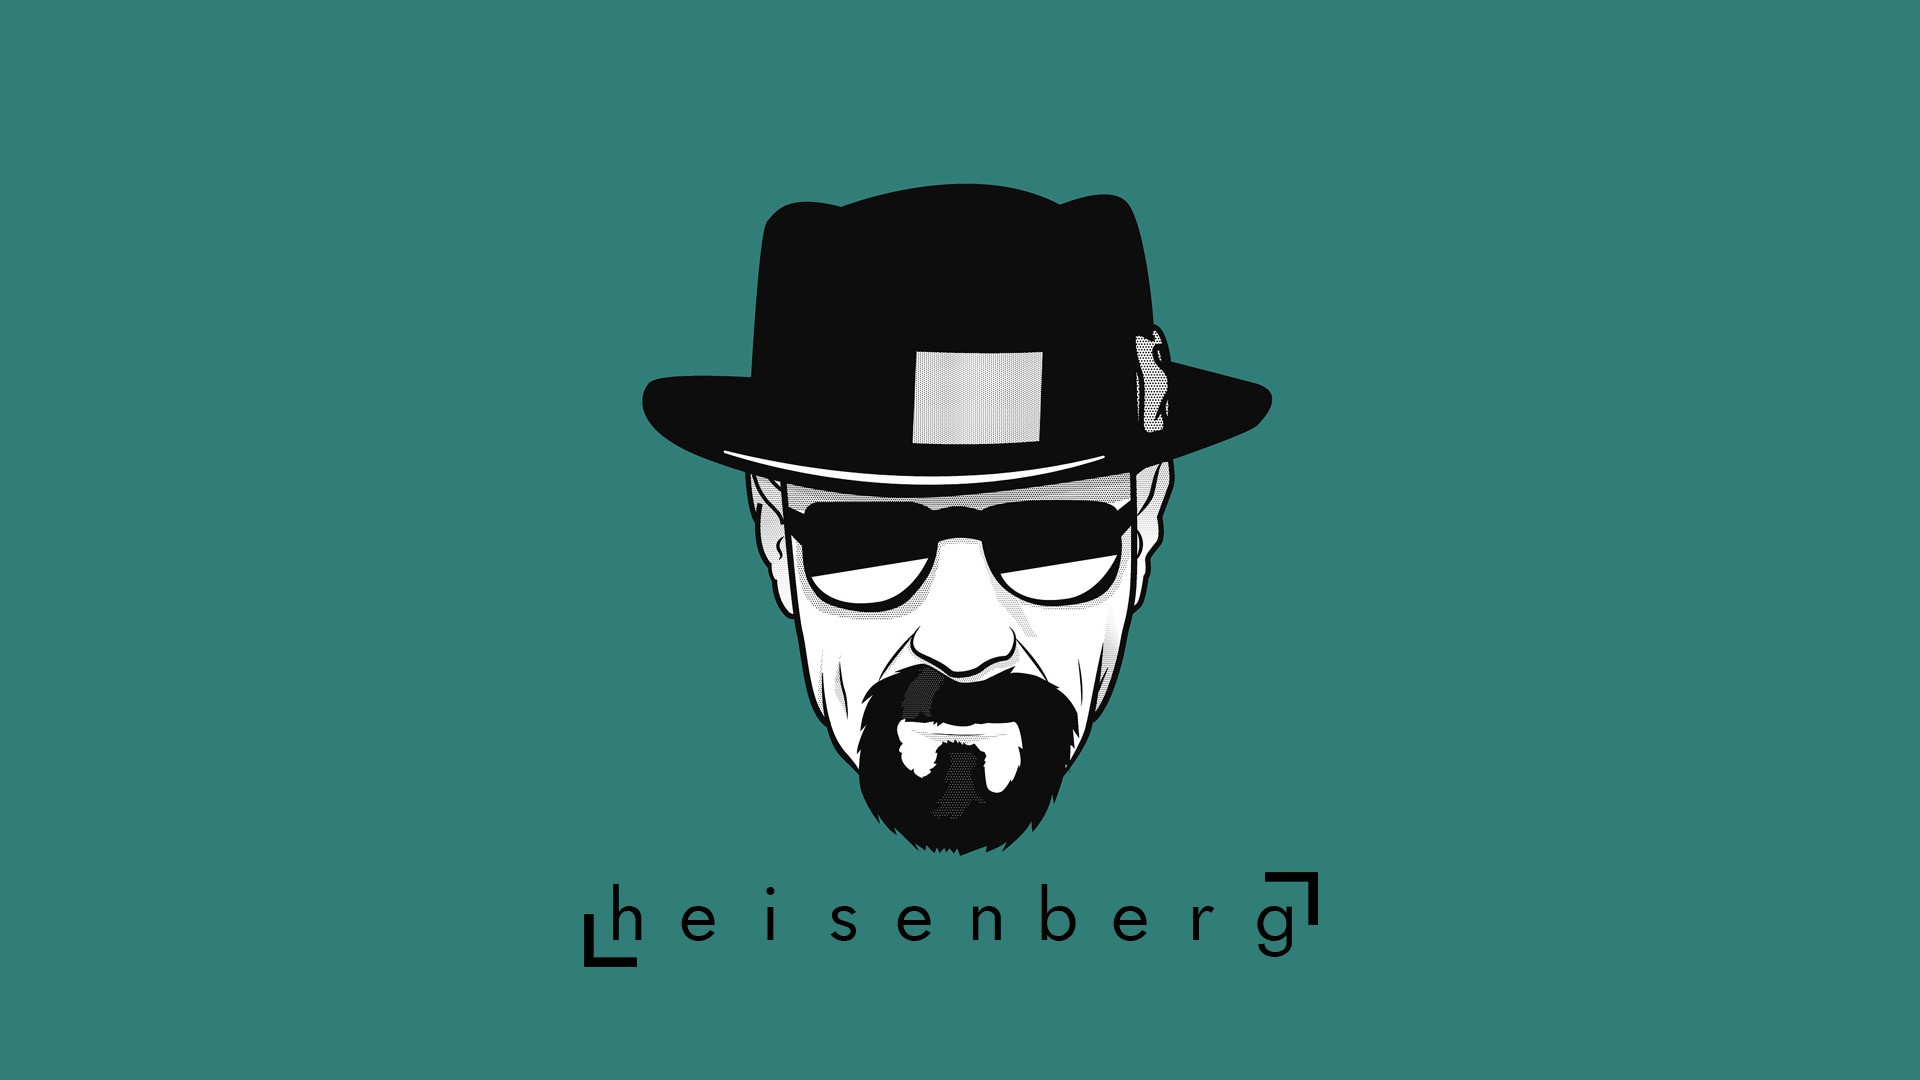 Heisenberg Illustration , HD Wallpaper & Backgrounds